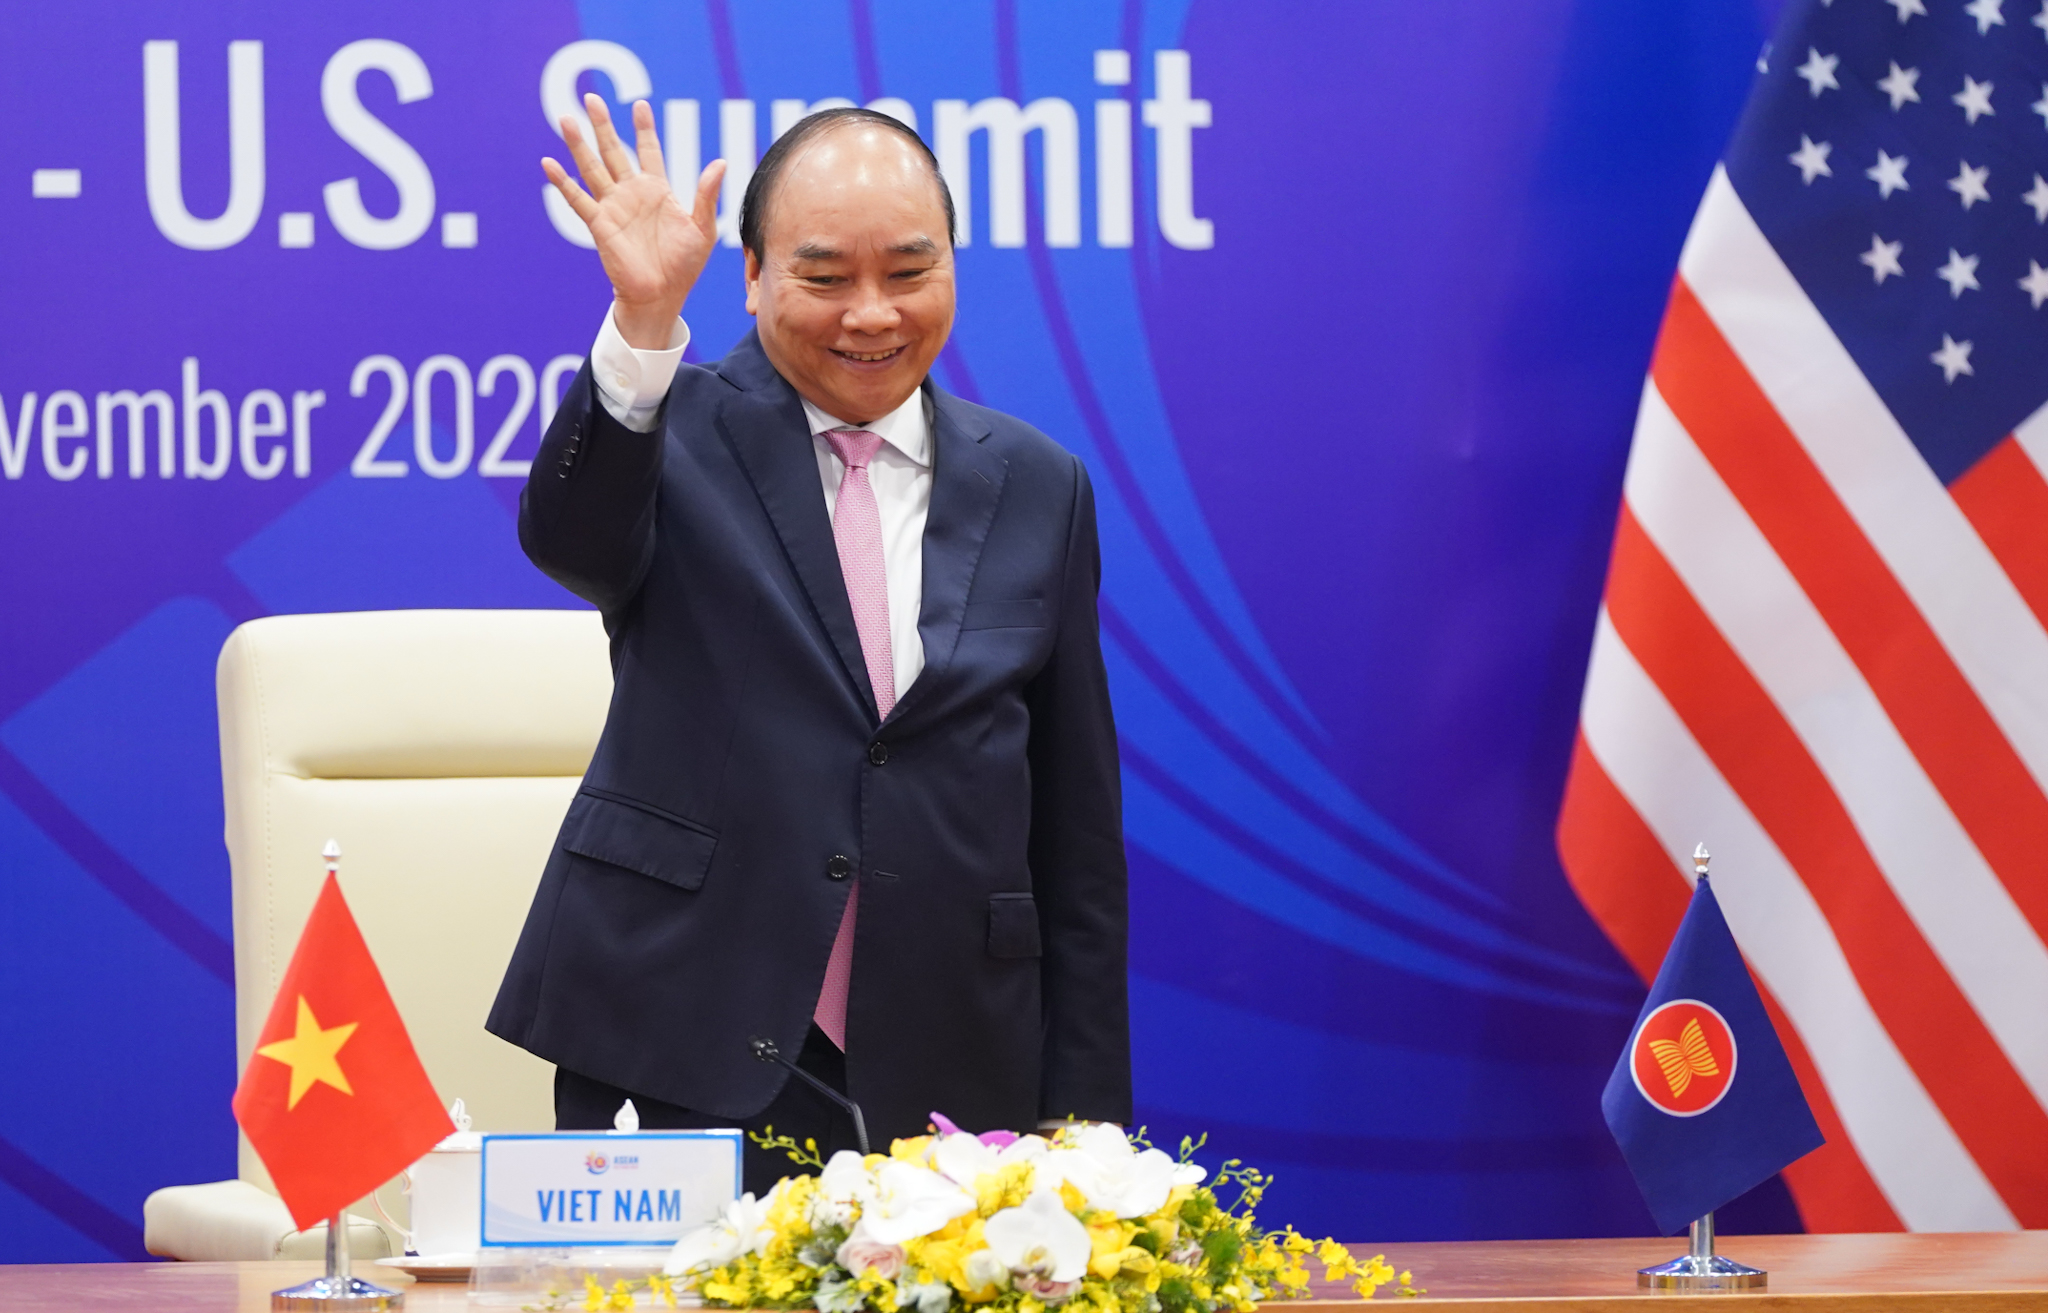 ASEAN-Hoa Kỳ: Việc thiết lập mối quan hệ giữa ASEAN và Hoa Kỳ mang lại lợi ích cho cả hai bên và cho khu vực châu Á - Thái Bình Dương. Hãy xem các hình ảnh về ASEAN và Hoa Kỳ để cảm nhận được sức mạnh của những quan hệ đối tác này và cơ hội tốt trong tương lai.